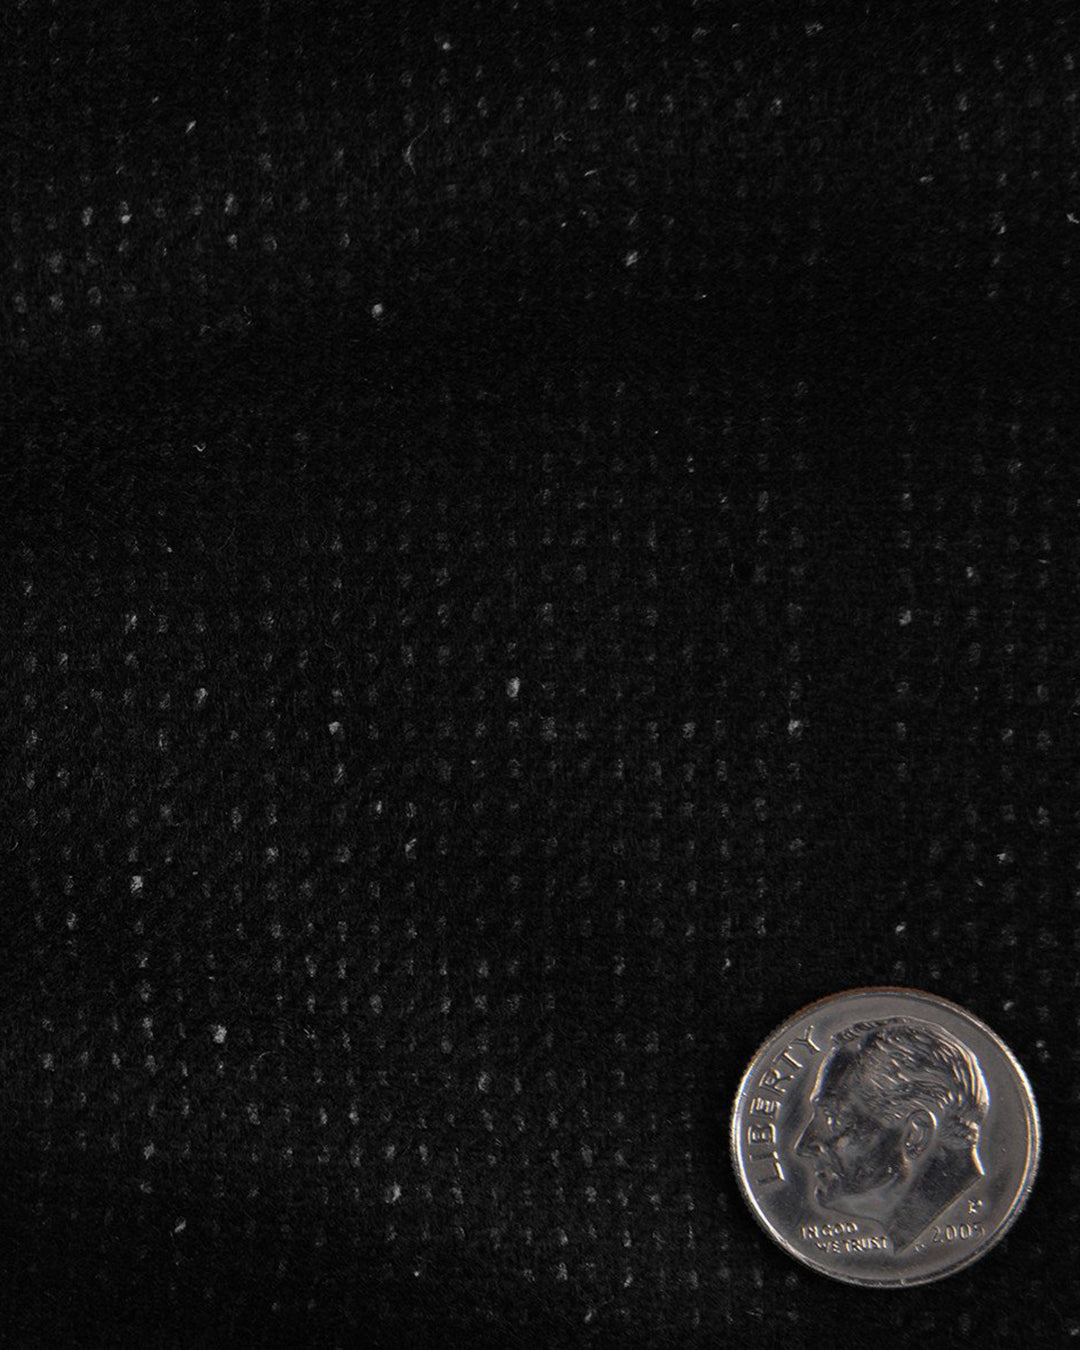 EThomas Wool Silk Cashmere: Dotted Black Windowpane Jacket